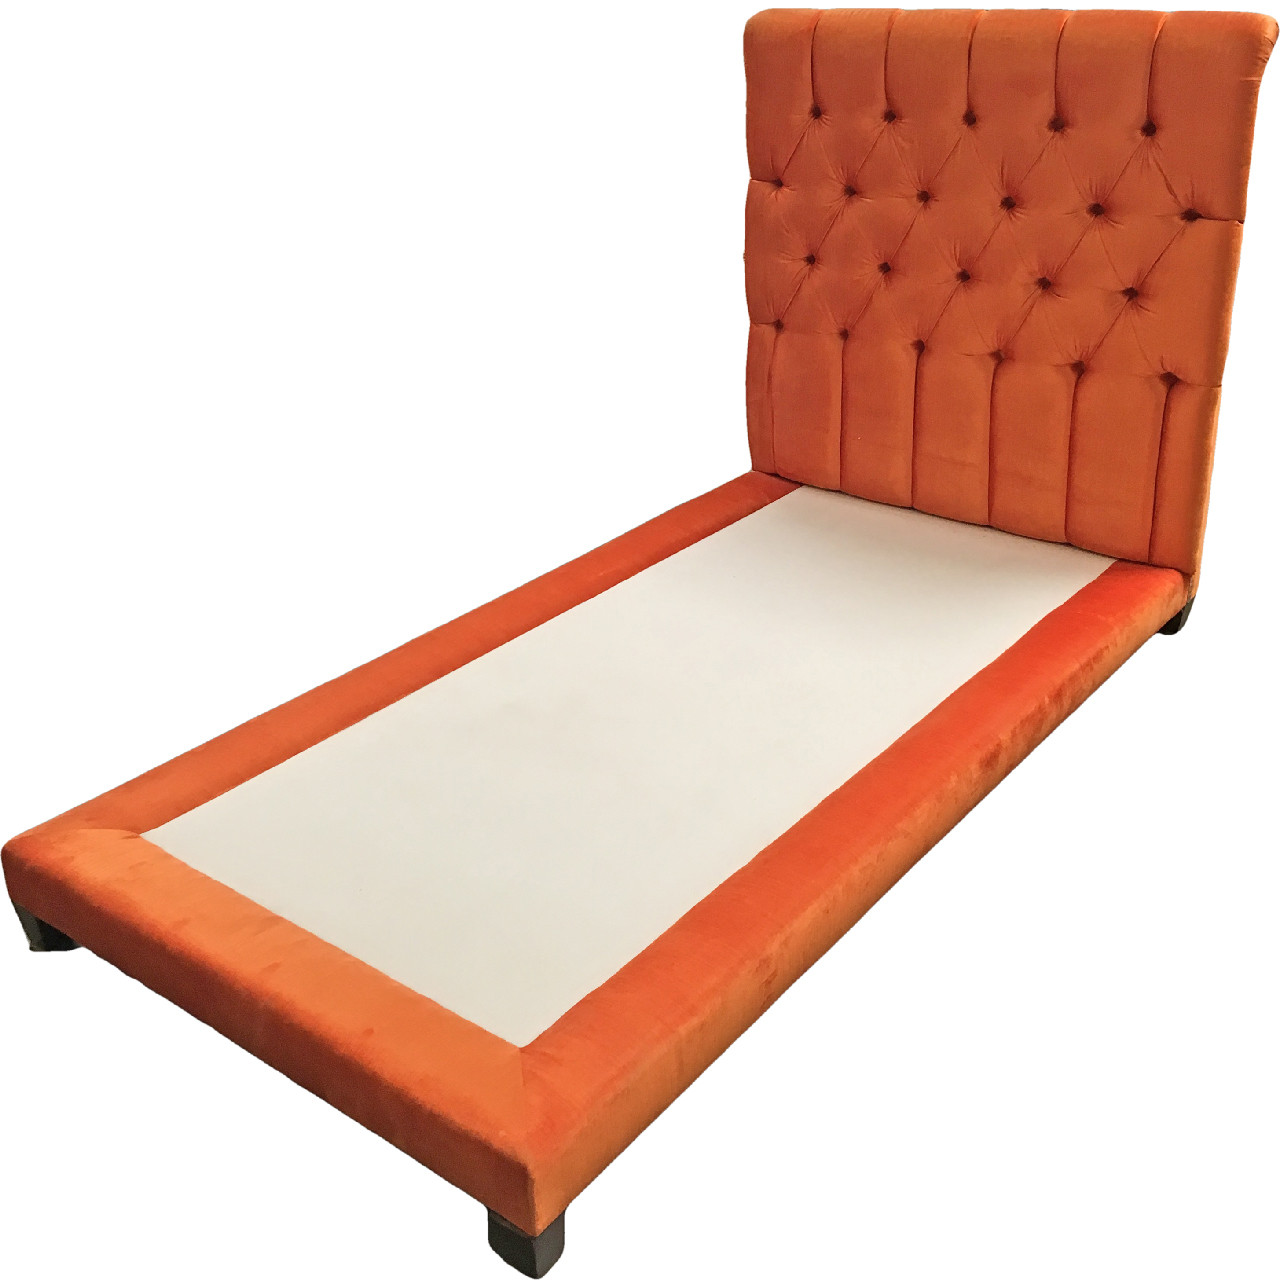 Nob Hill Bed Afk Furniture